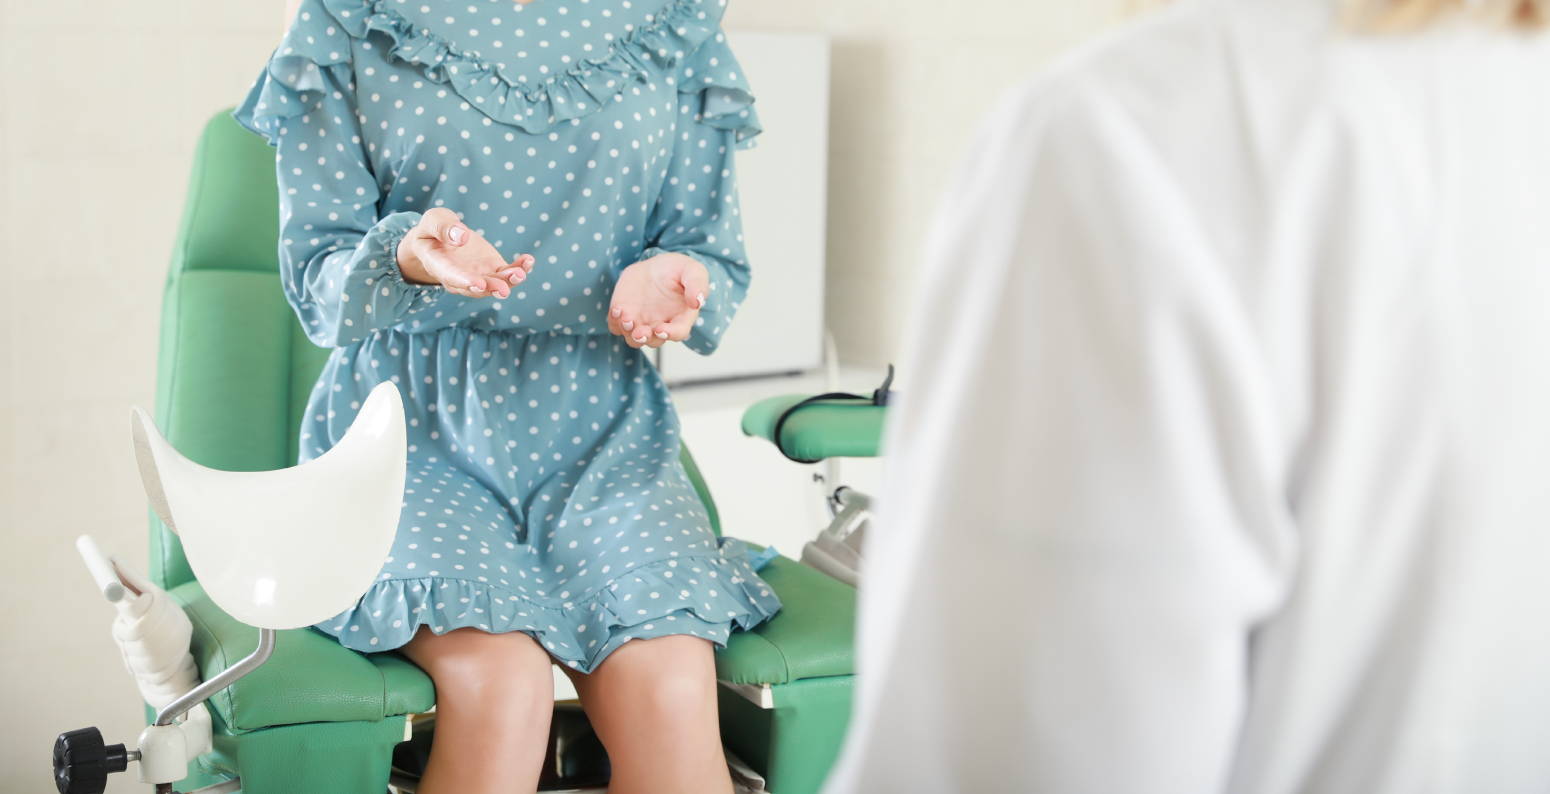 Фото - Профілактика раку шийки матки: питання і відповіді